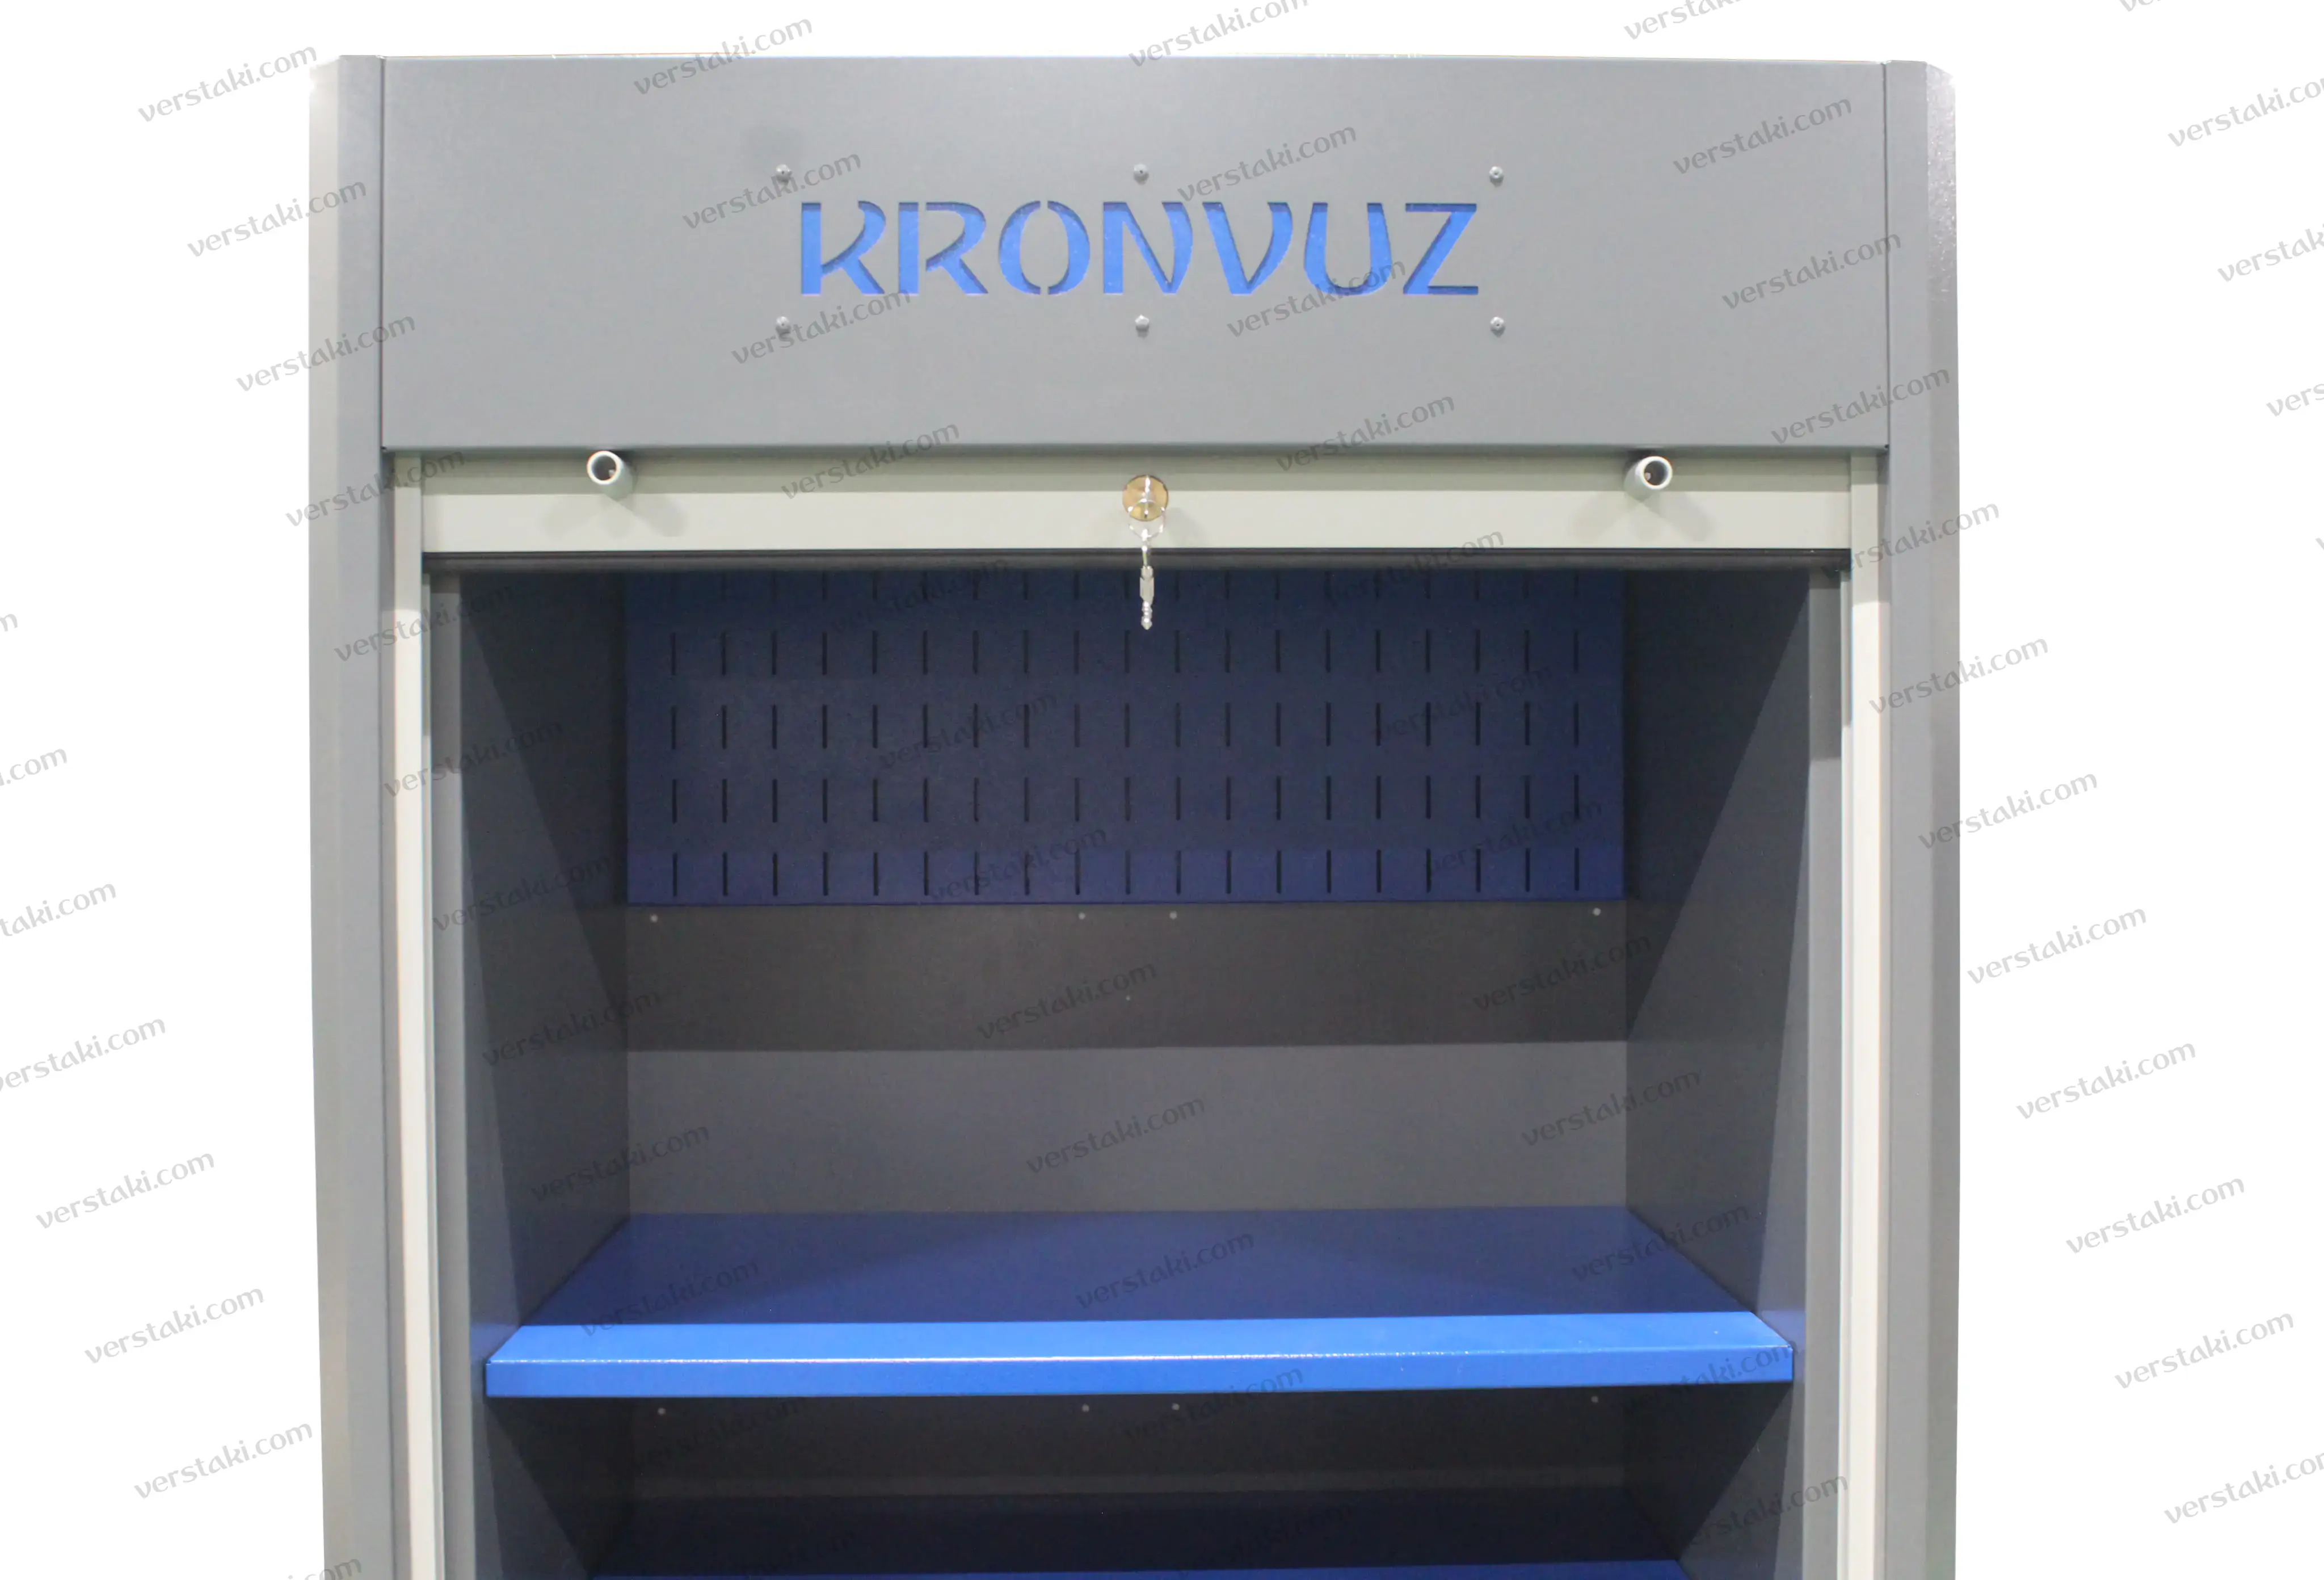 Фото инструментального шкафа KronVuz Box 1(10)21R3 с перфорированным экраном